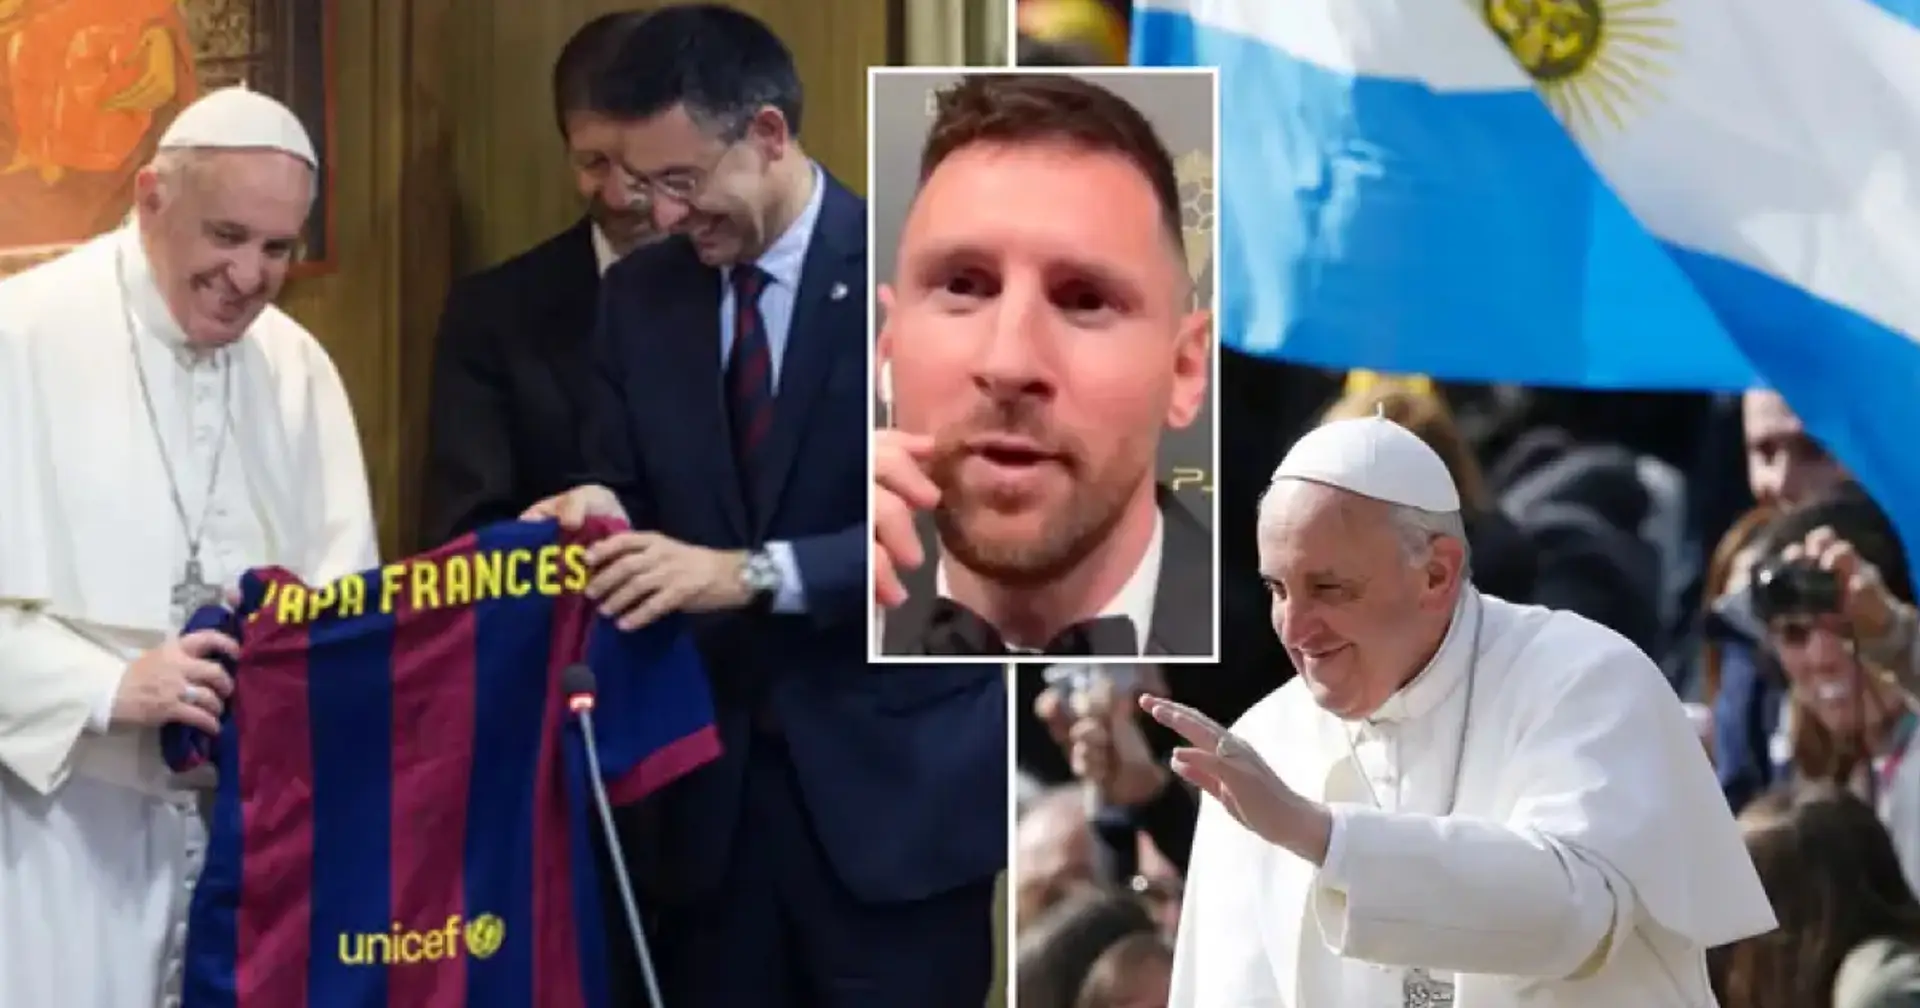 Papst Franziskus hat den ultimativen Gentleman im Fußball benannt - es ist nicht Messi